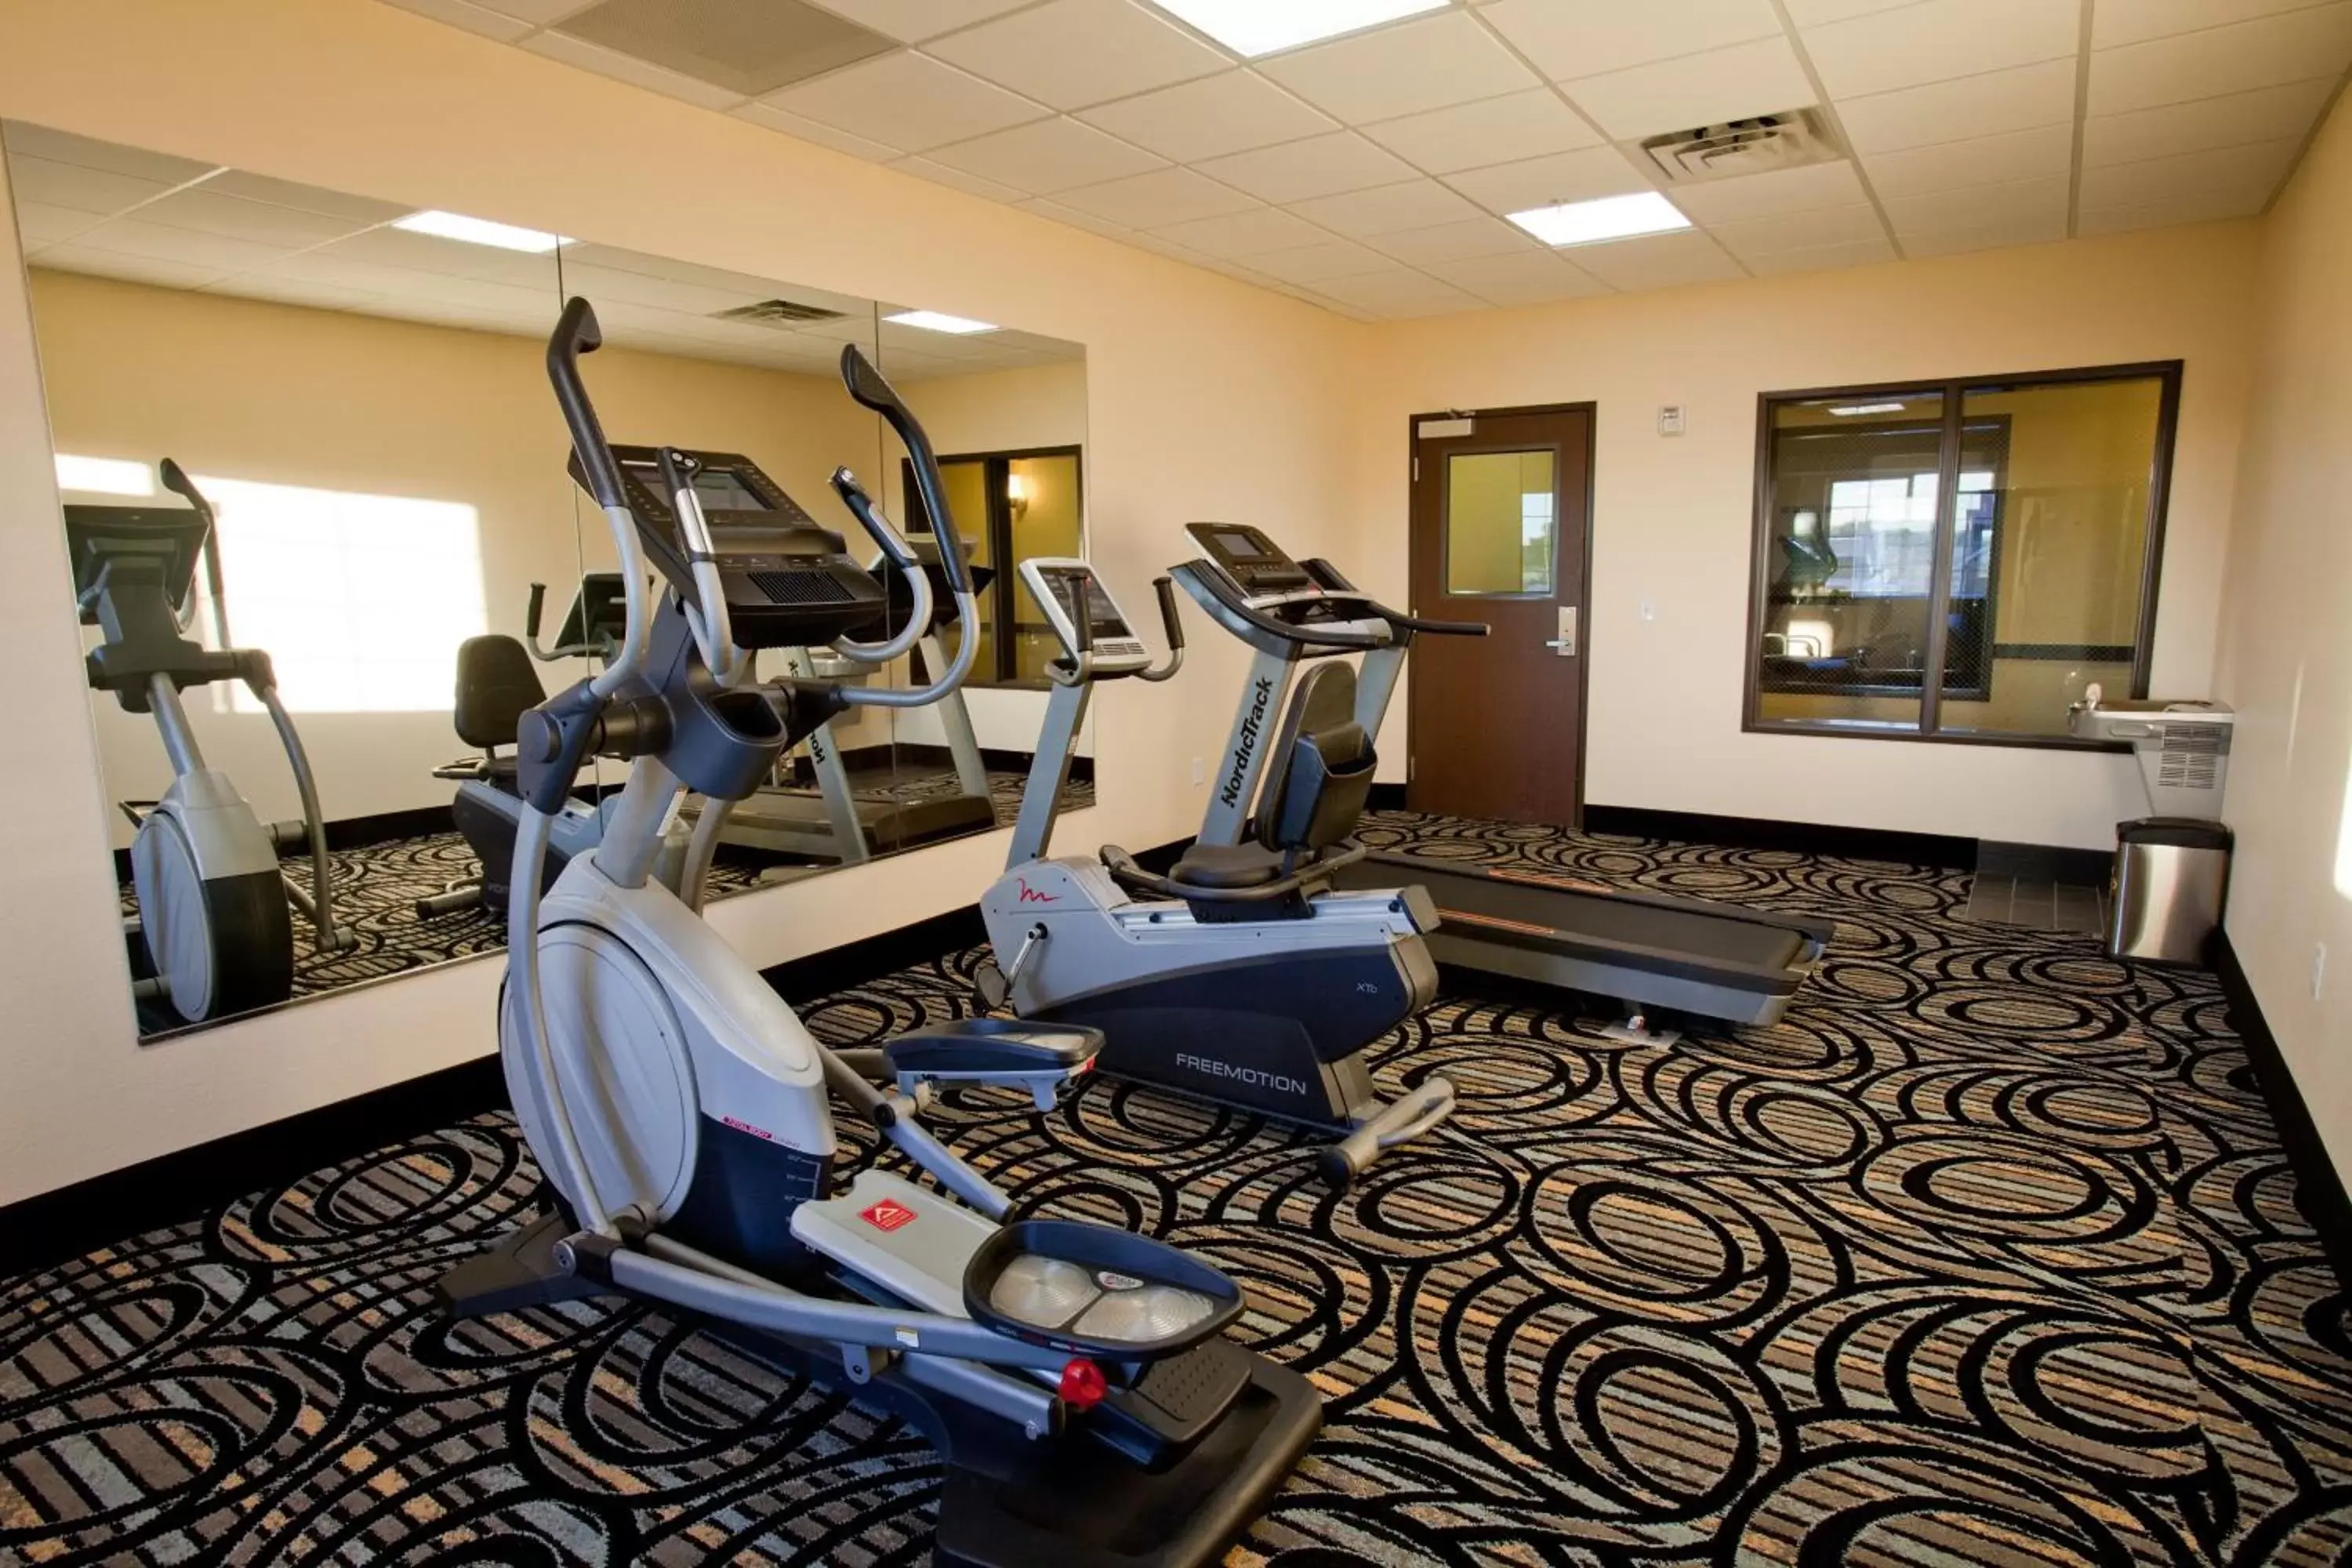 Fitness centre/facilities, Fitness Center/Facilities in Americas Best Value Inn Roosevelt/Ballard